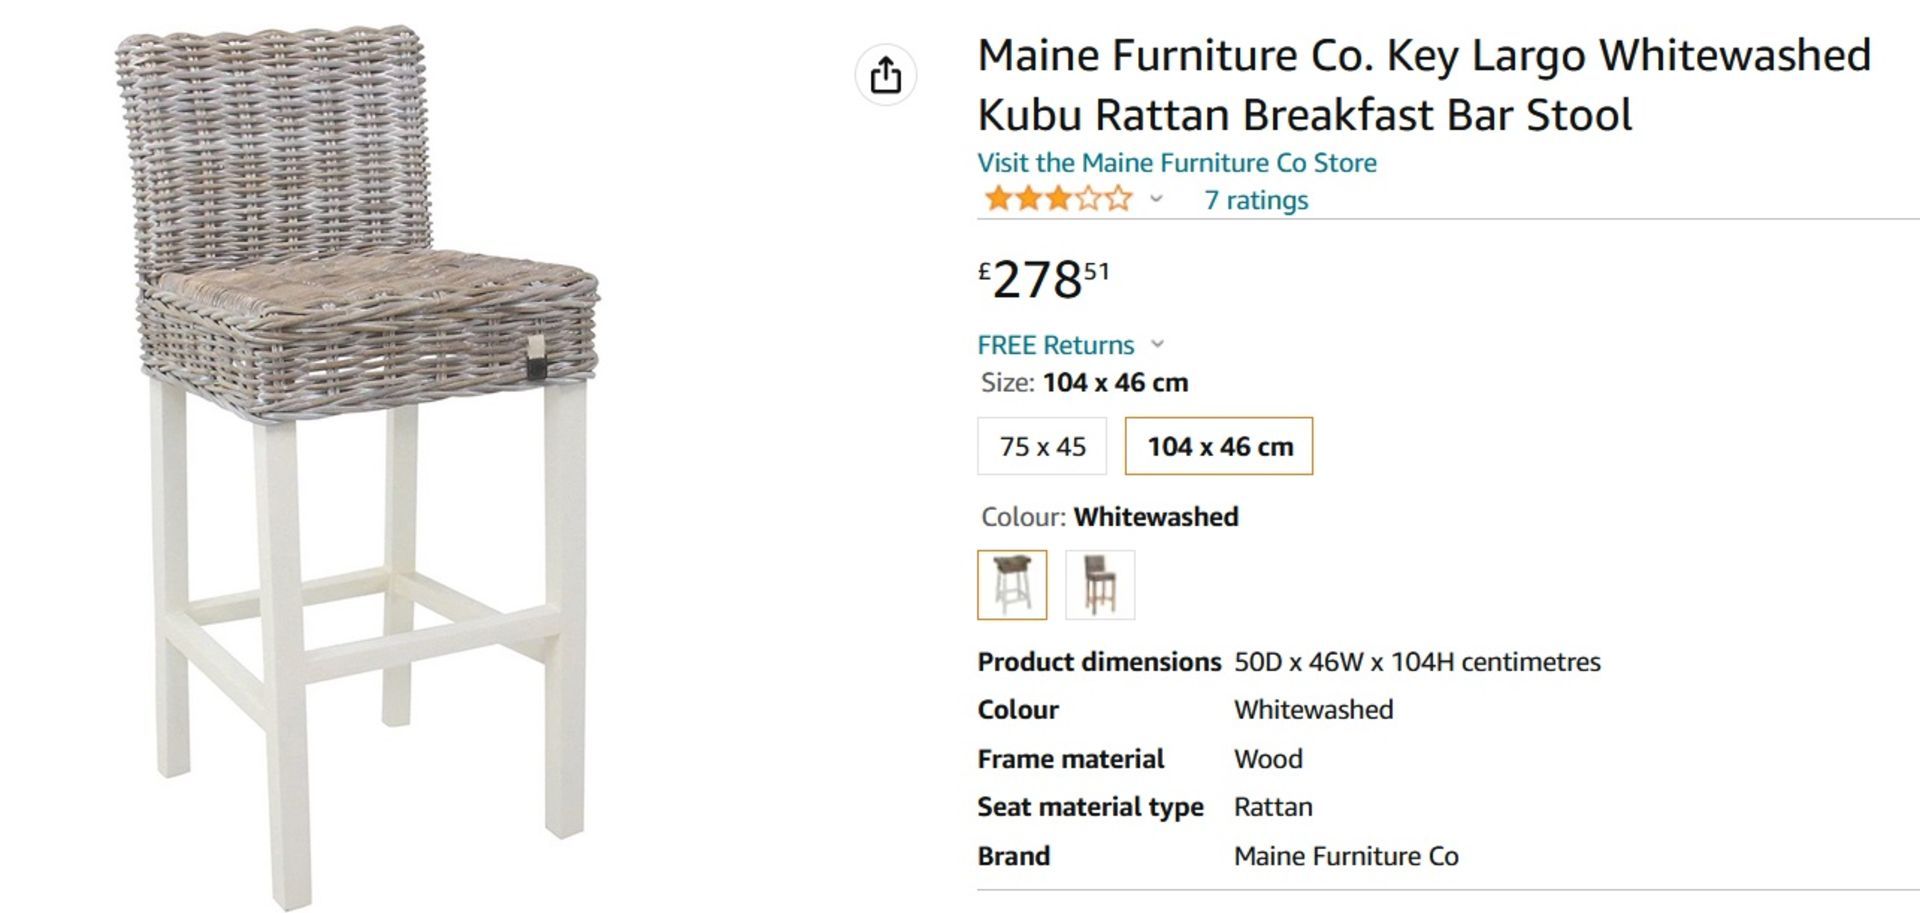 NEW & BOXED 2x Maine Furniture Co. Key Largo Whitewashed Kubu Rattan Breakfast Bar Stool. RRP £278. - Image 2 of 6